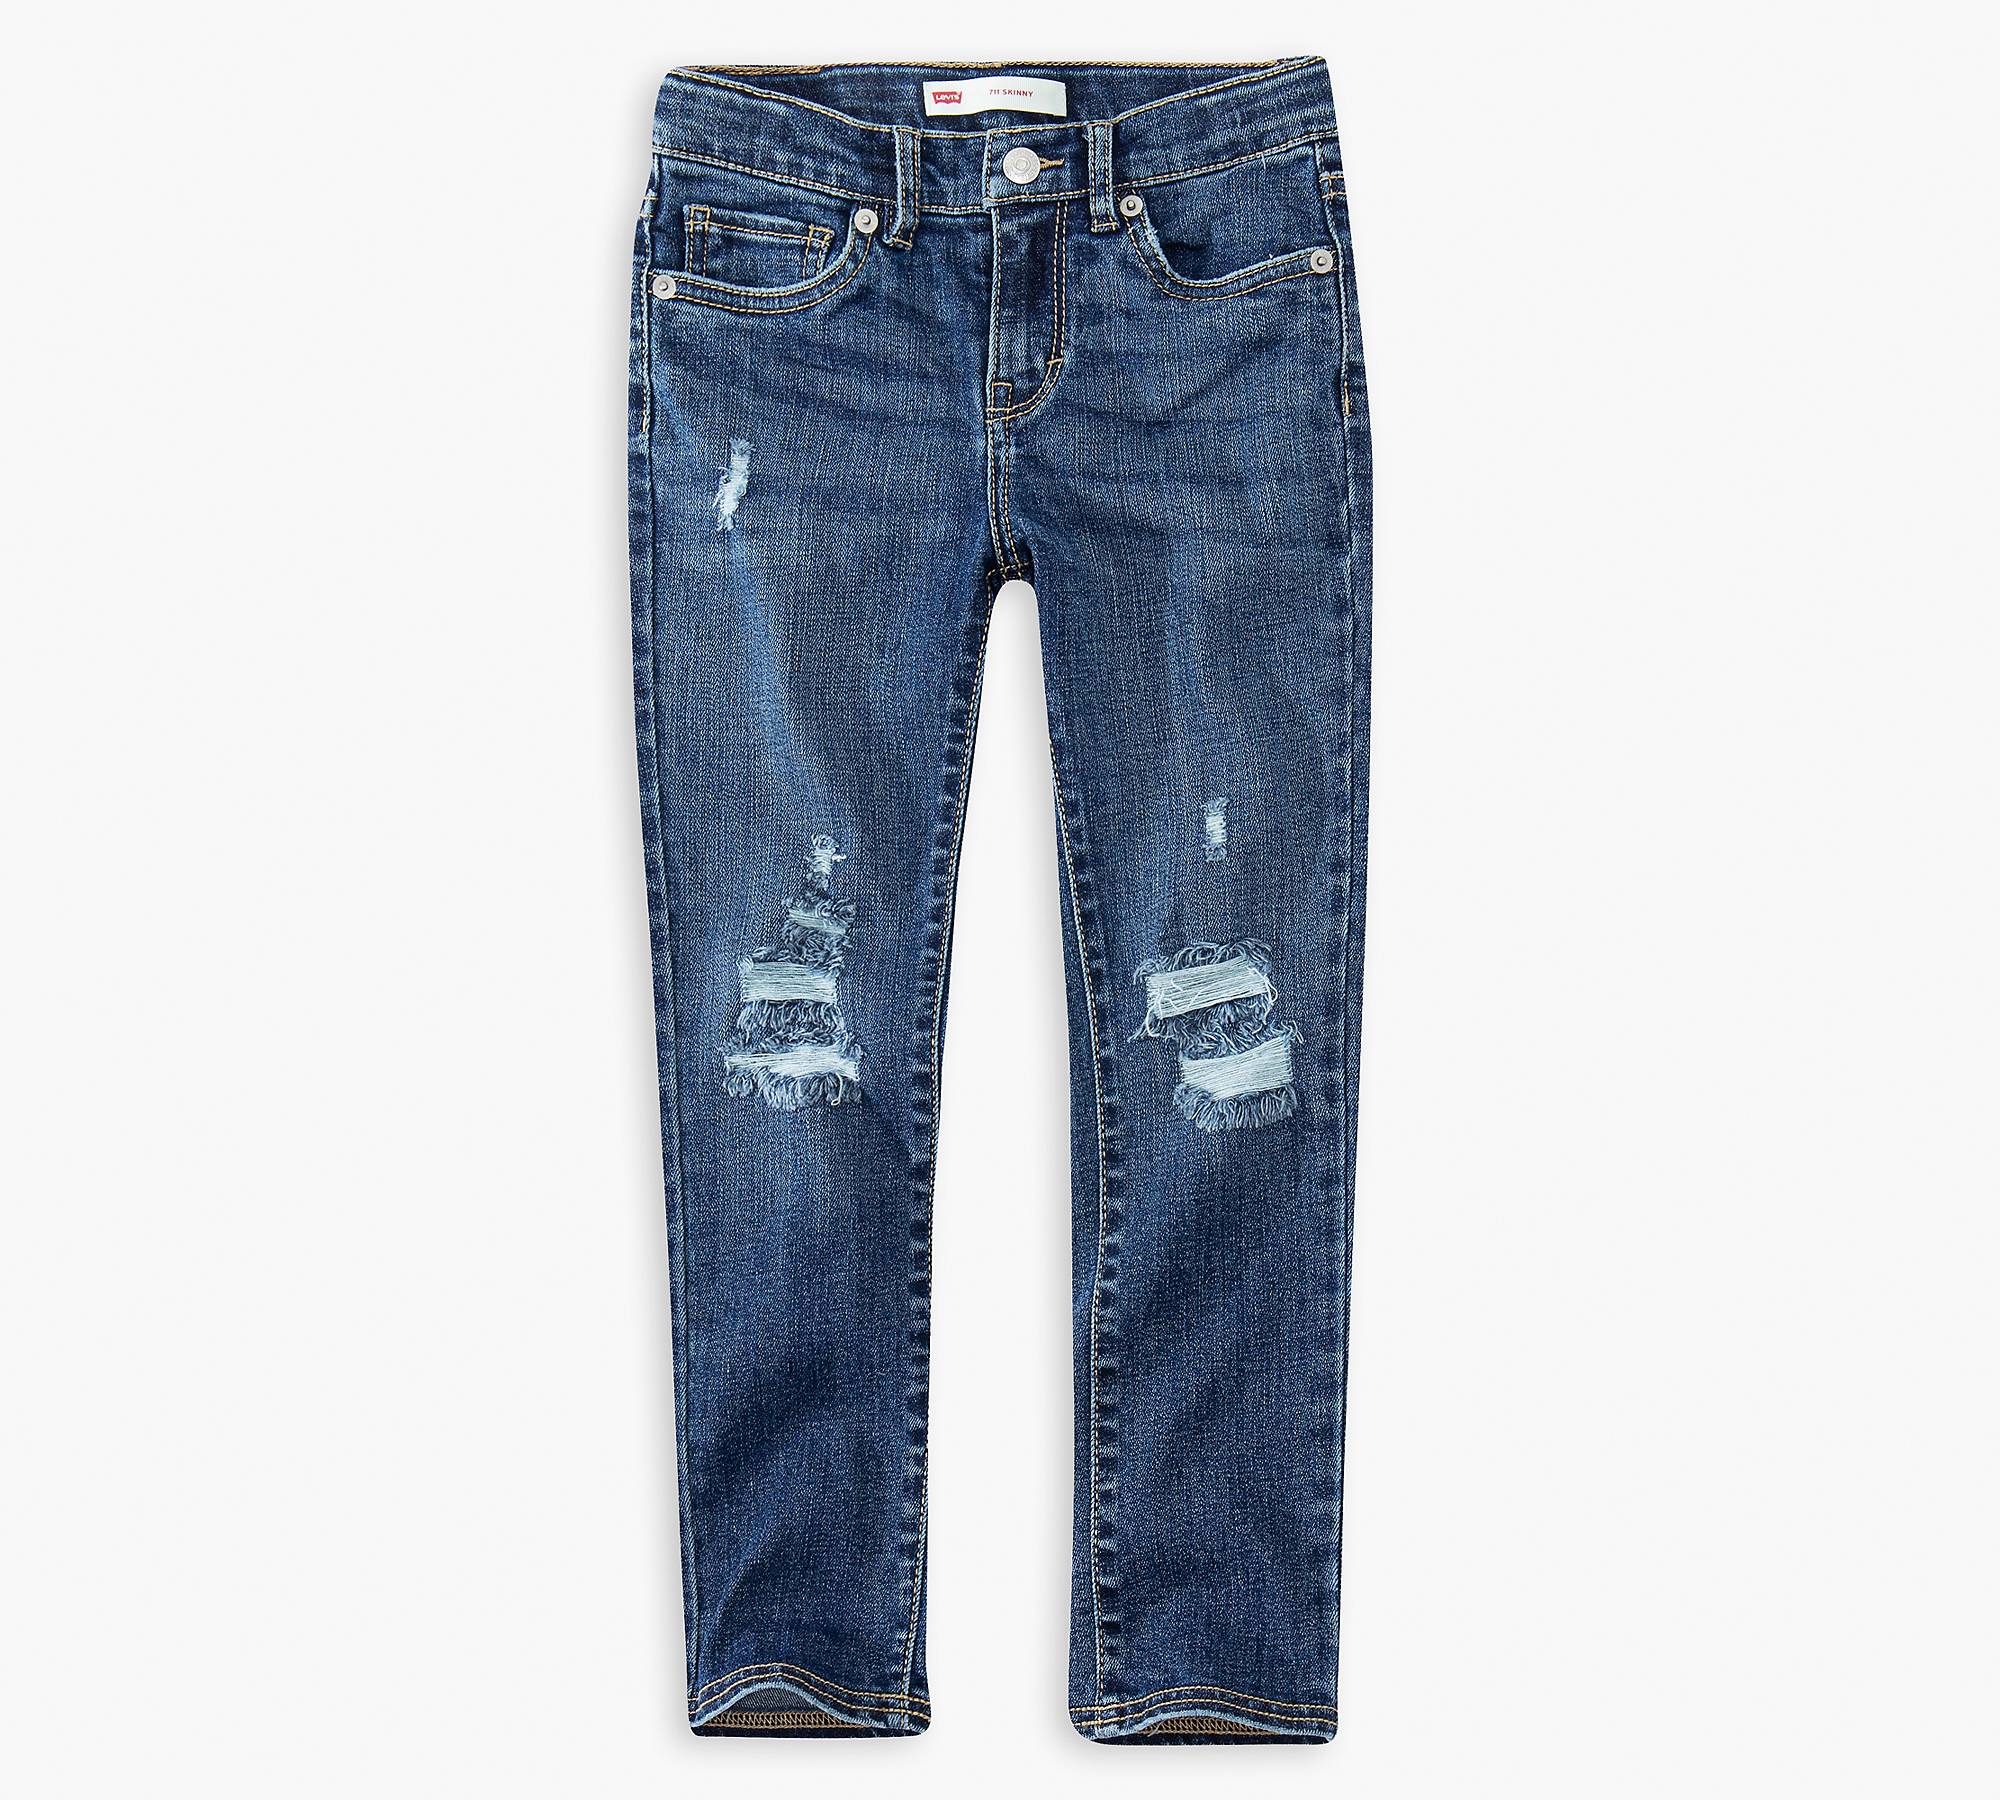 711 Skinny Little Girls Jeans 4-6x 1